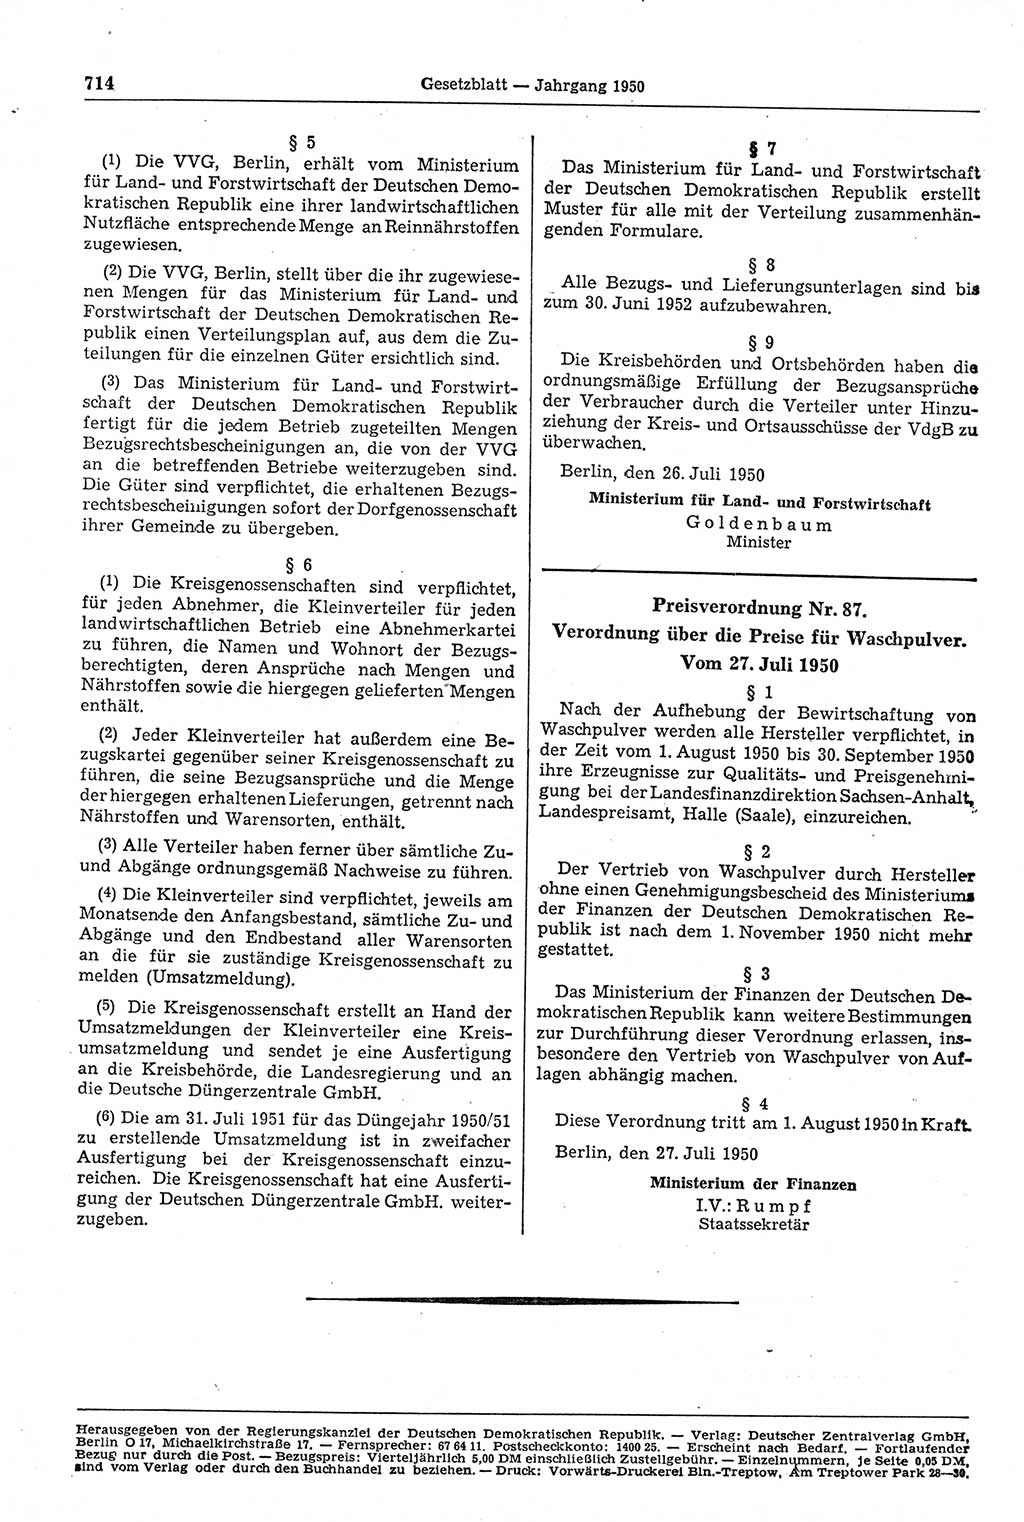 Gesetzblatt (GBl.) der Deutschen Demokratischen Republik (DDR) 1950, Seite 714 (GBl. DDR 1950, S. 714)